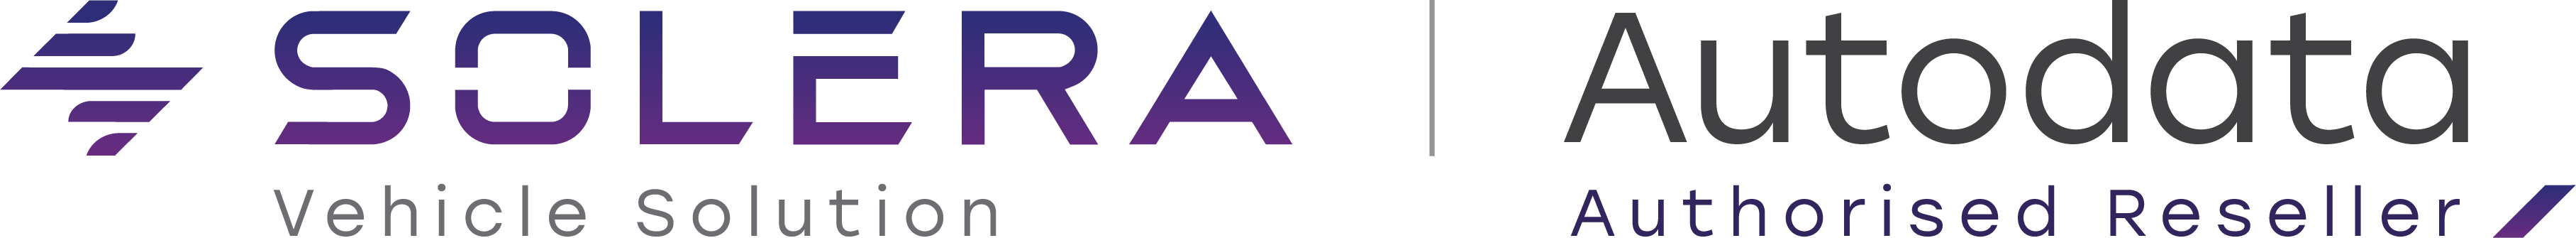 Logotip-Solera-in-Autodata